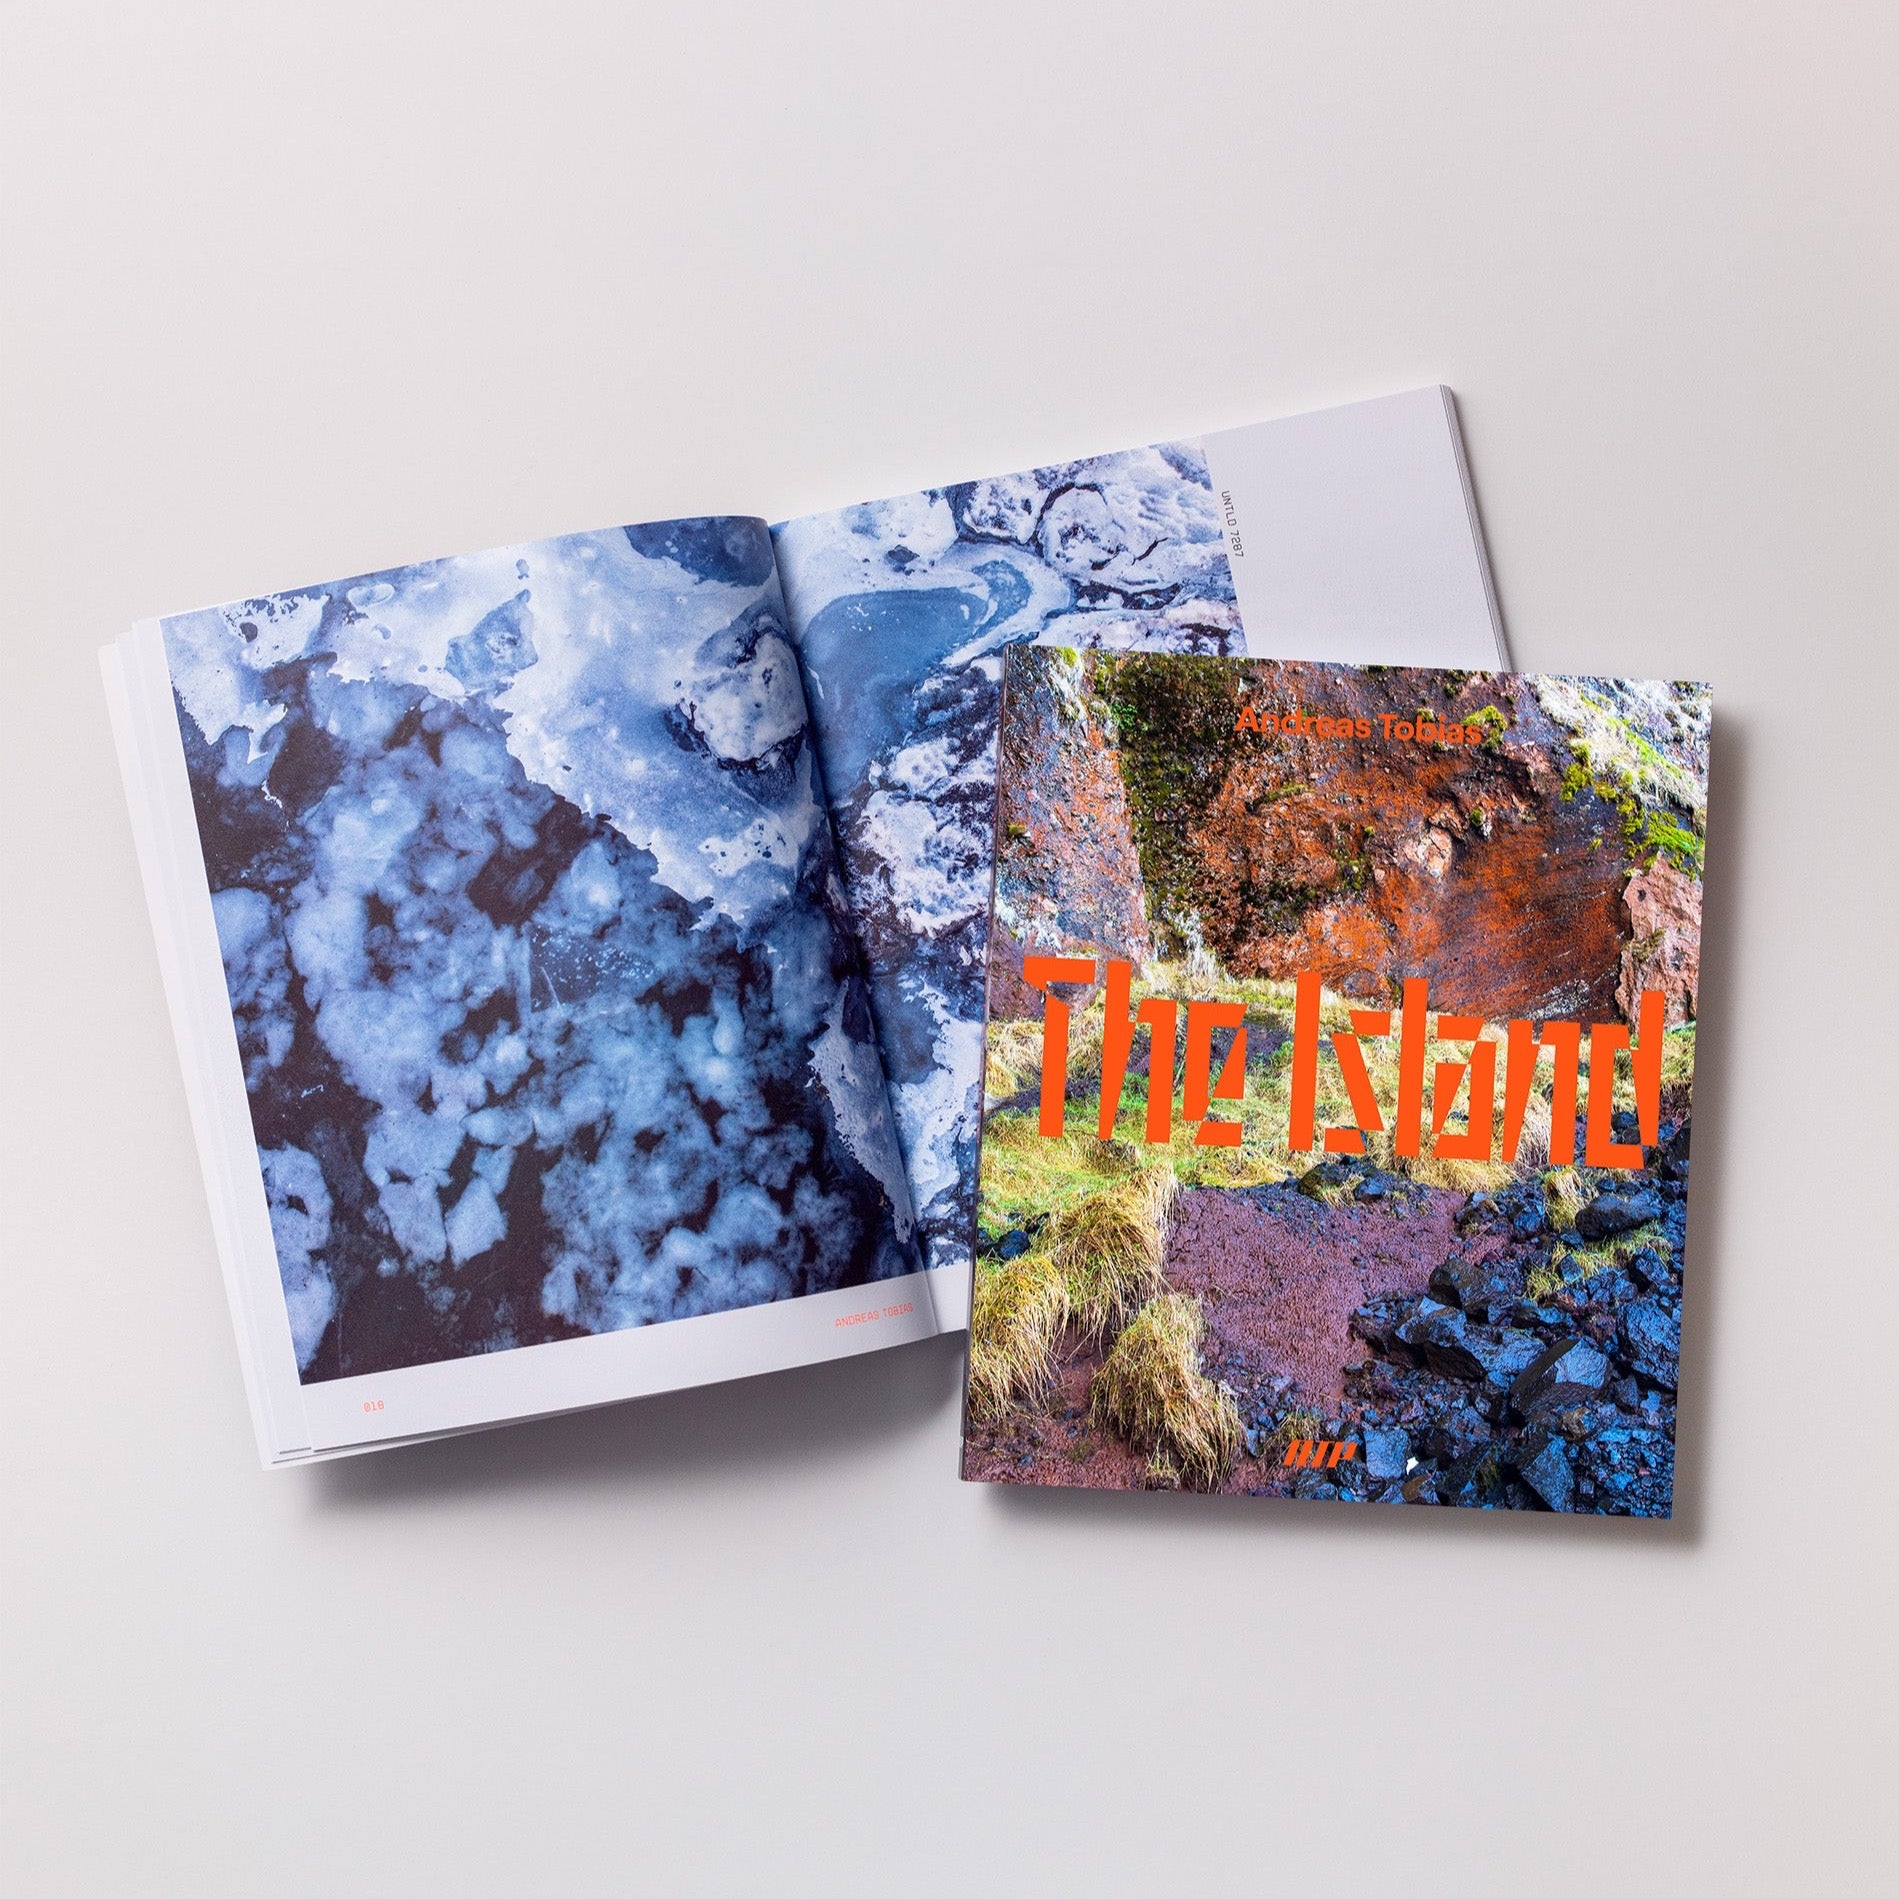 THE ISLAND – Buch und Postkarten als Set